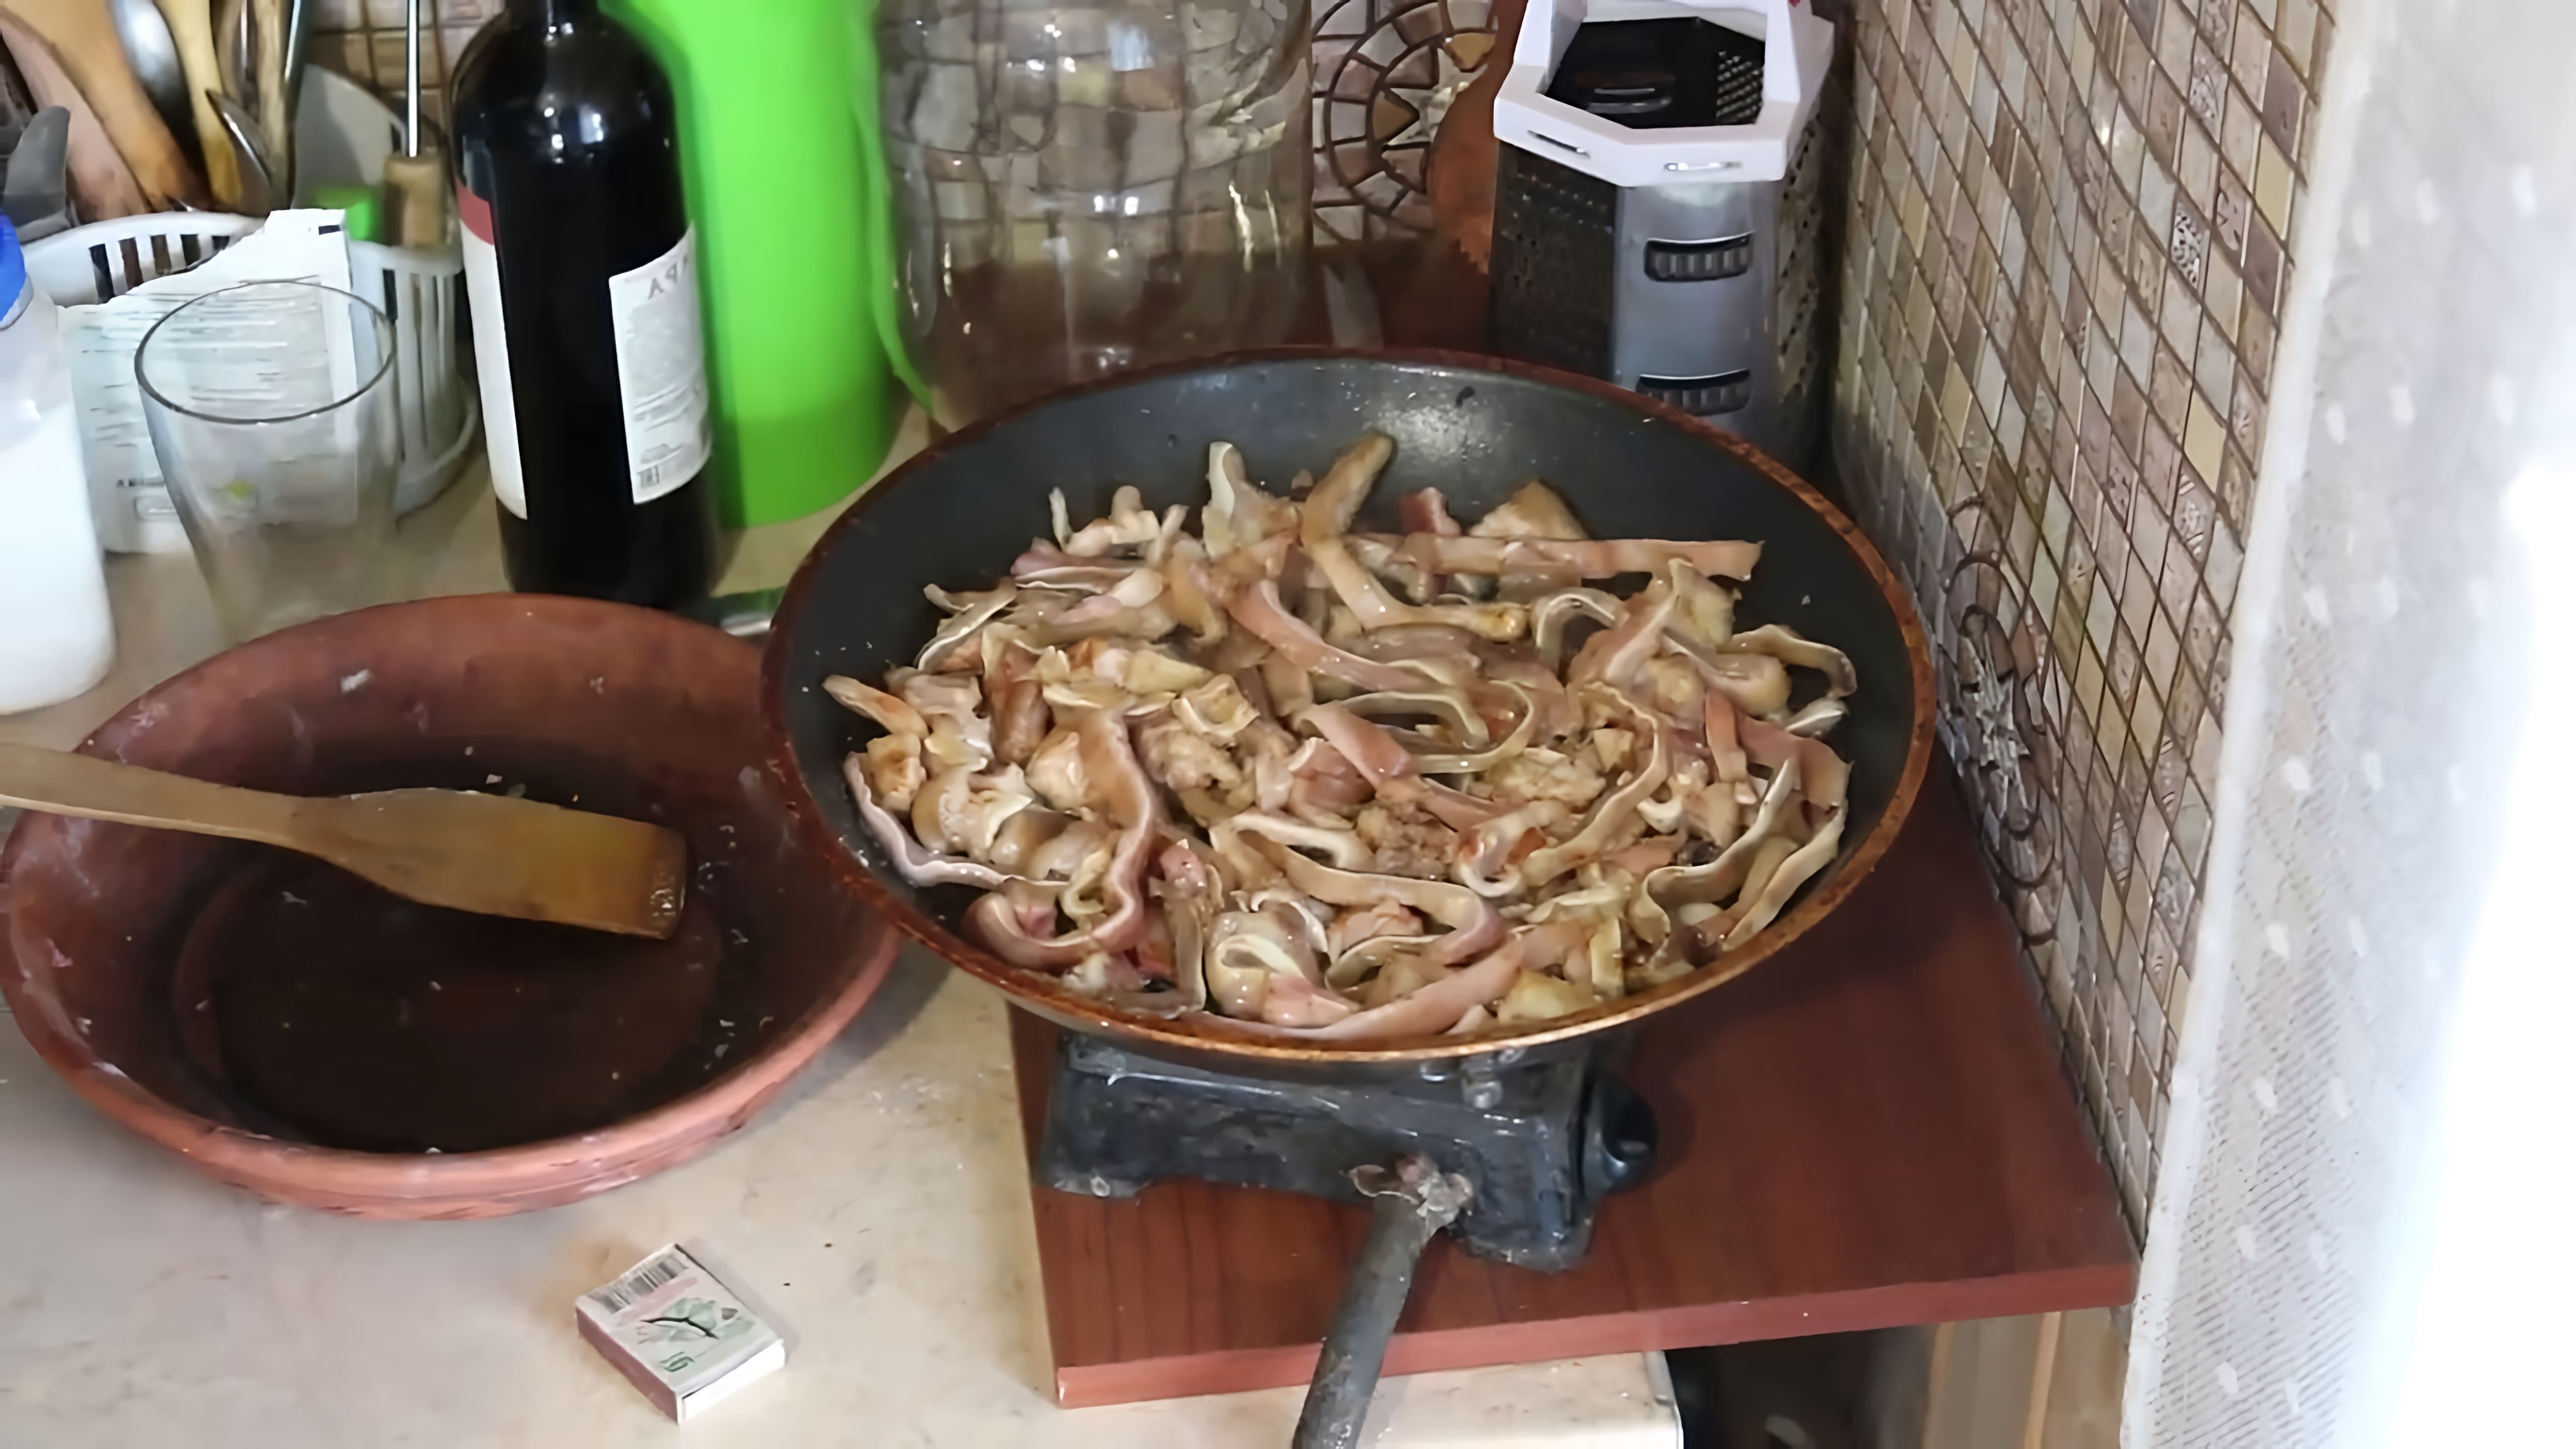 В этом видео демонстрируется процесс приготовления свиных ушей в качестве закуски